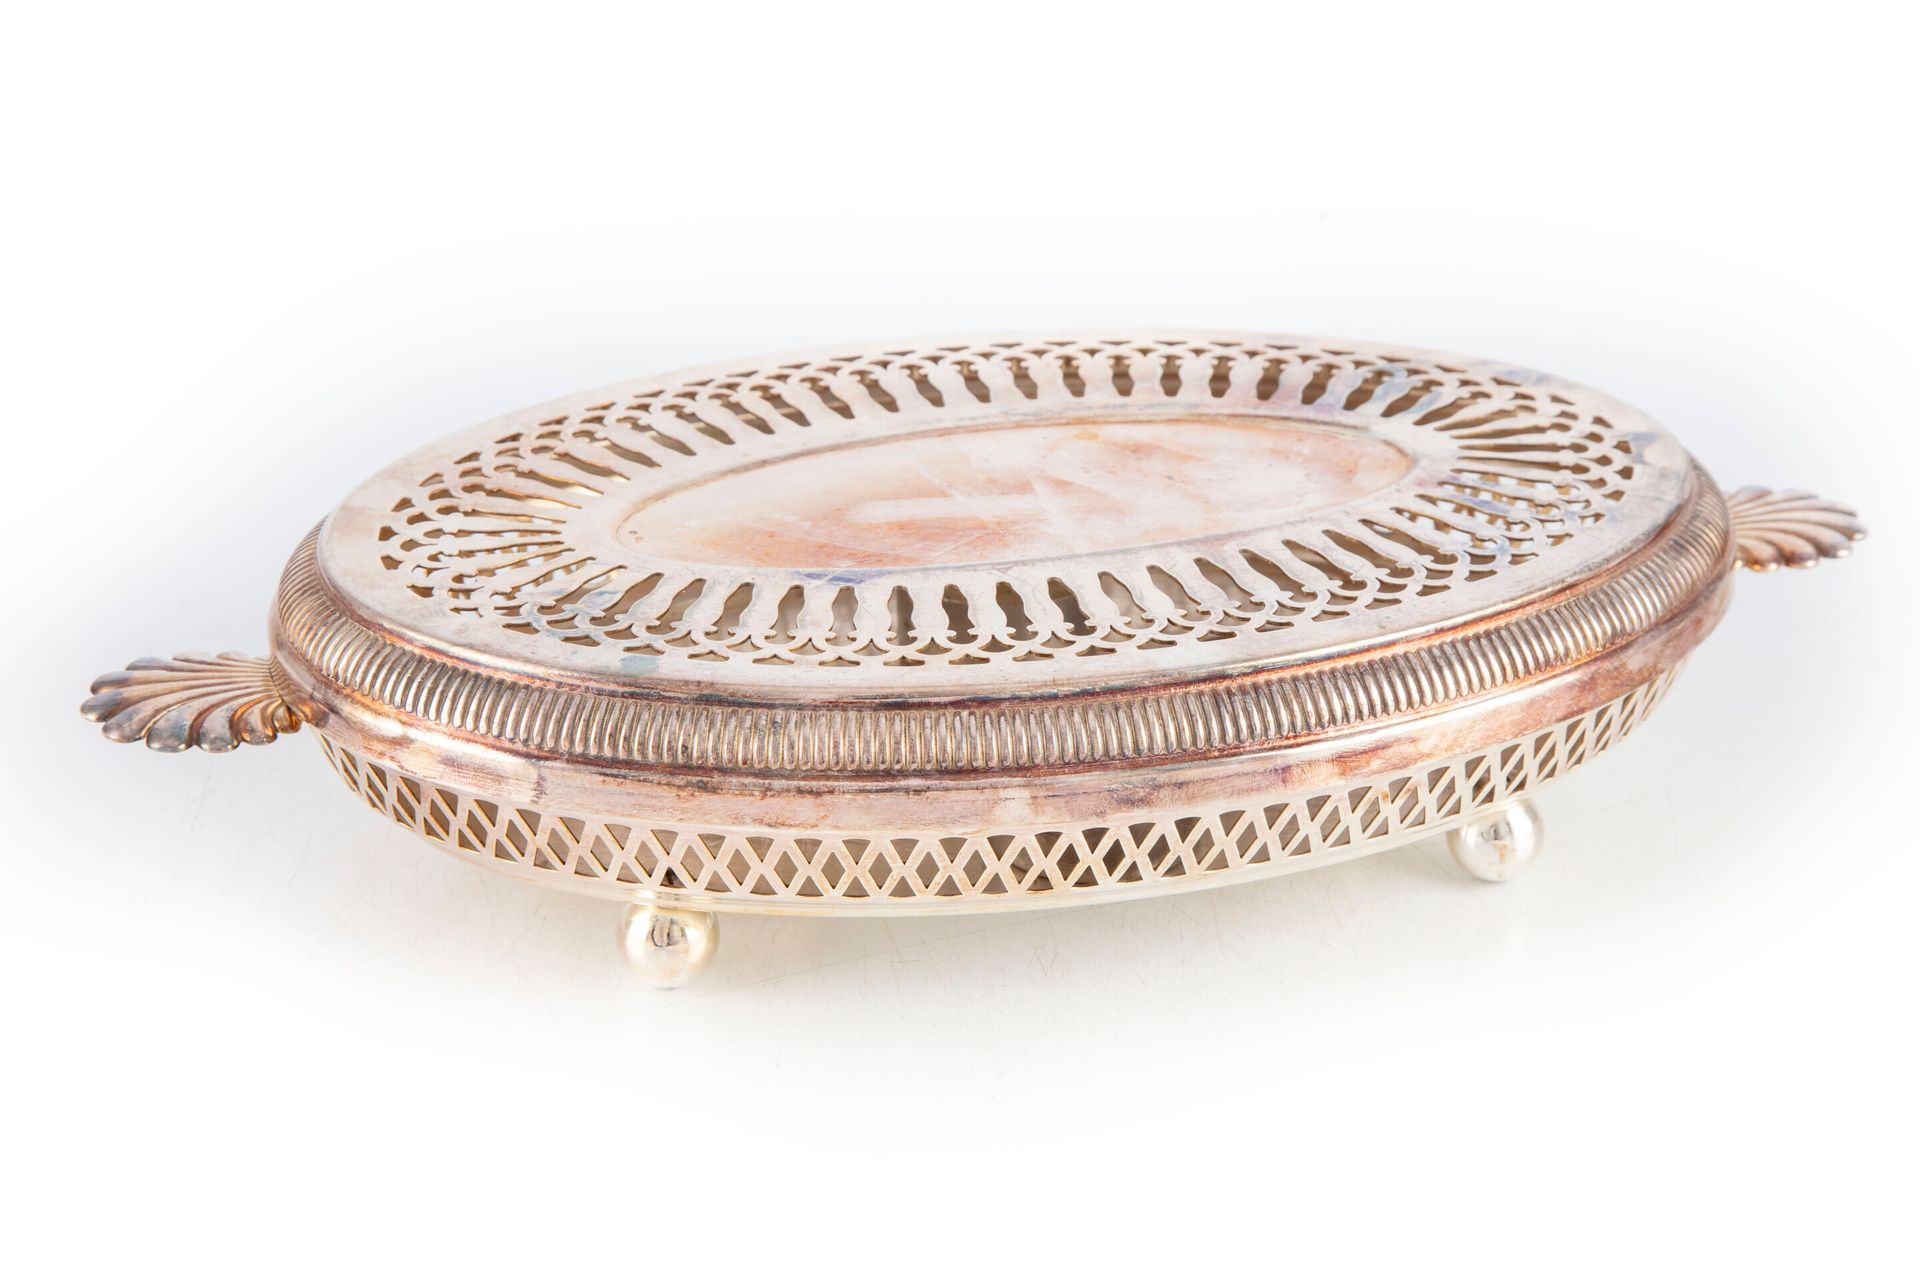 Null Chauffe-plat en métal argenté de forme ovale à décor ajouré

L. : 34 cm